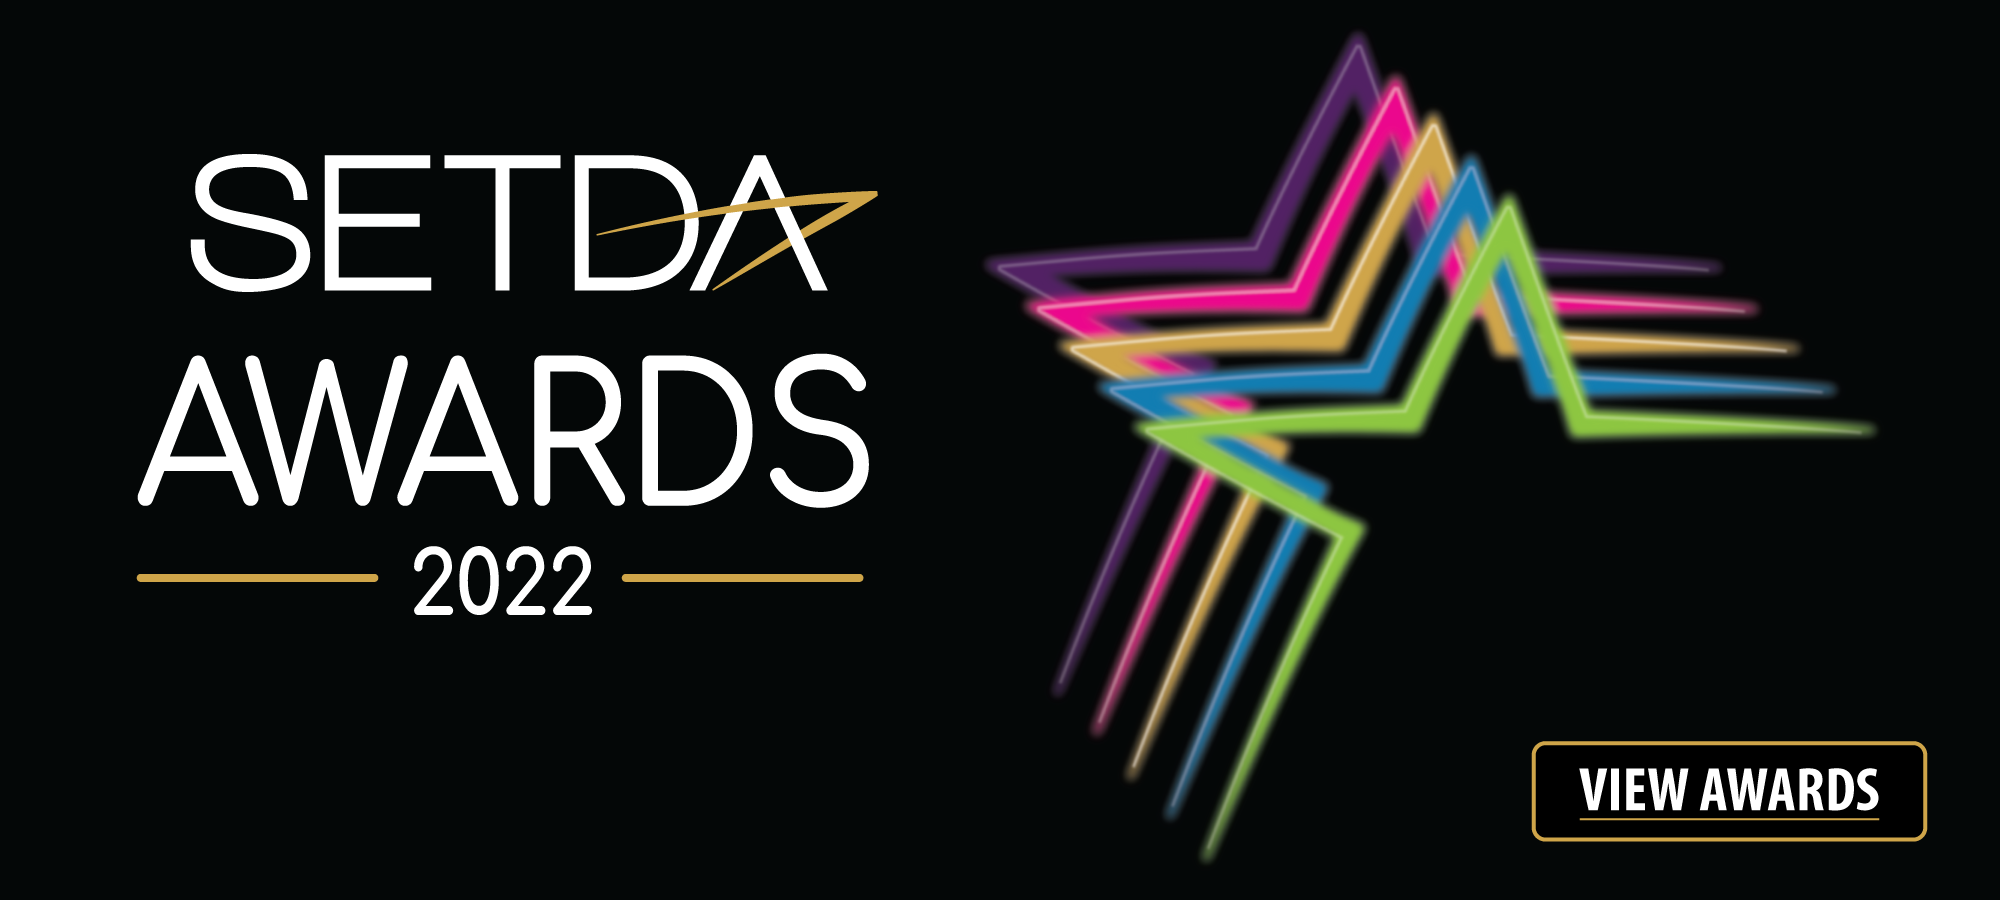 SETDA Awards 2022